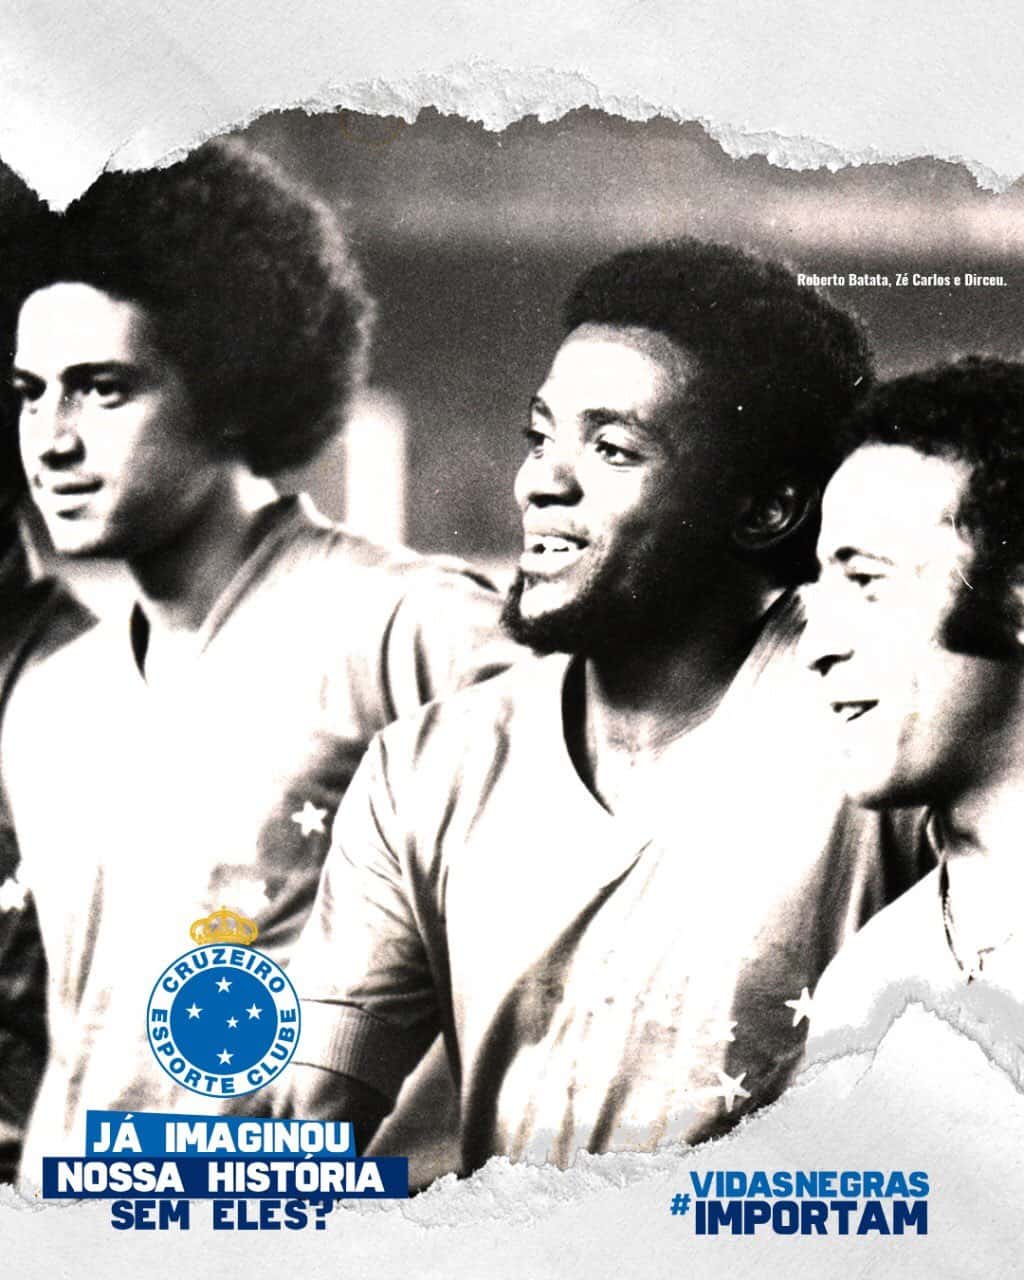 'Nossa história não seria tão cabulosa se não fossem as lutas e os talentos de negros como Roberto Batata, Zé Carlos, Dirceu Lopes e tantos outros que fizeram conhecer a força e o peso da camisa estrelada em todos os cantos do mundo', escreveu o Cruzeiro.